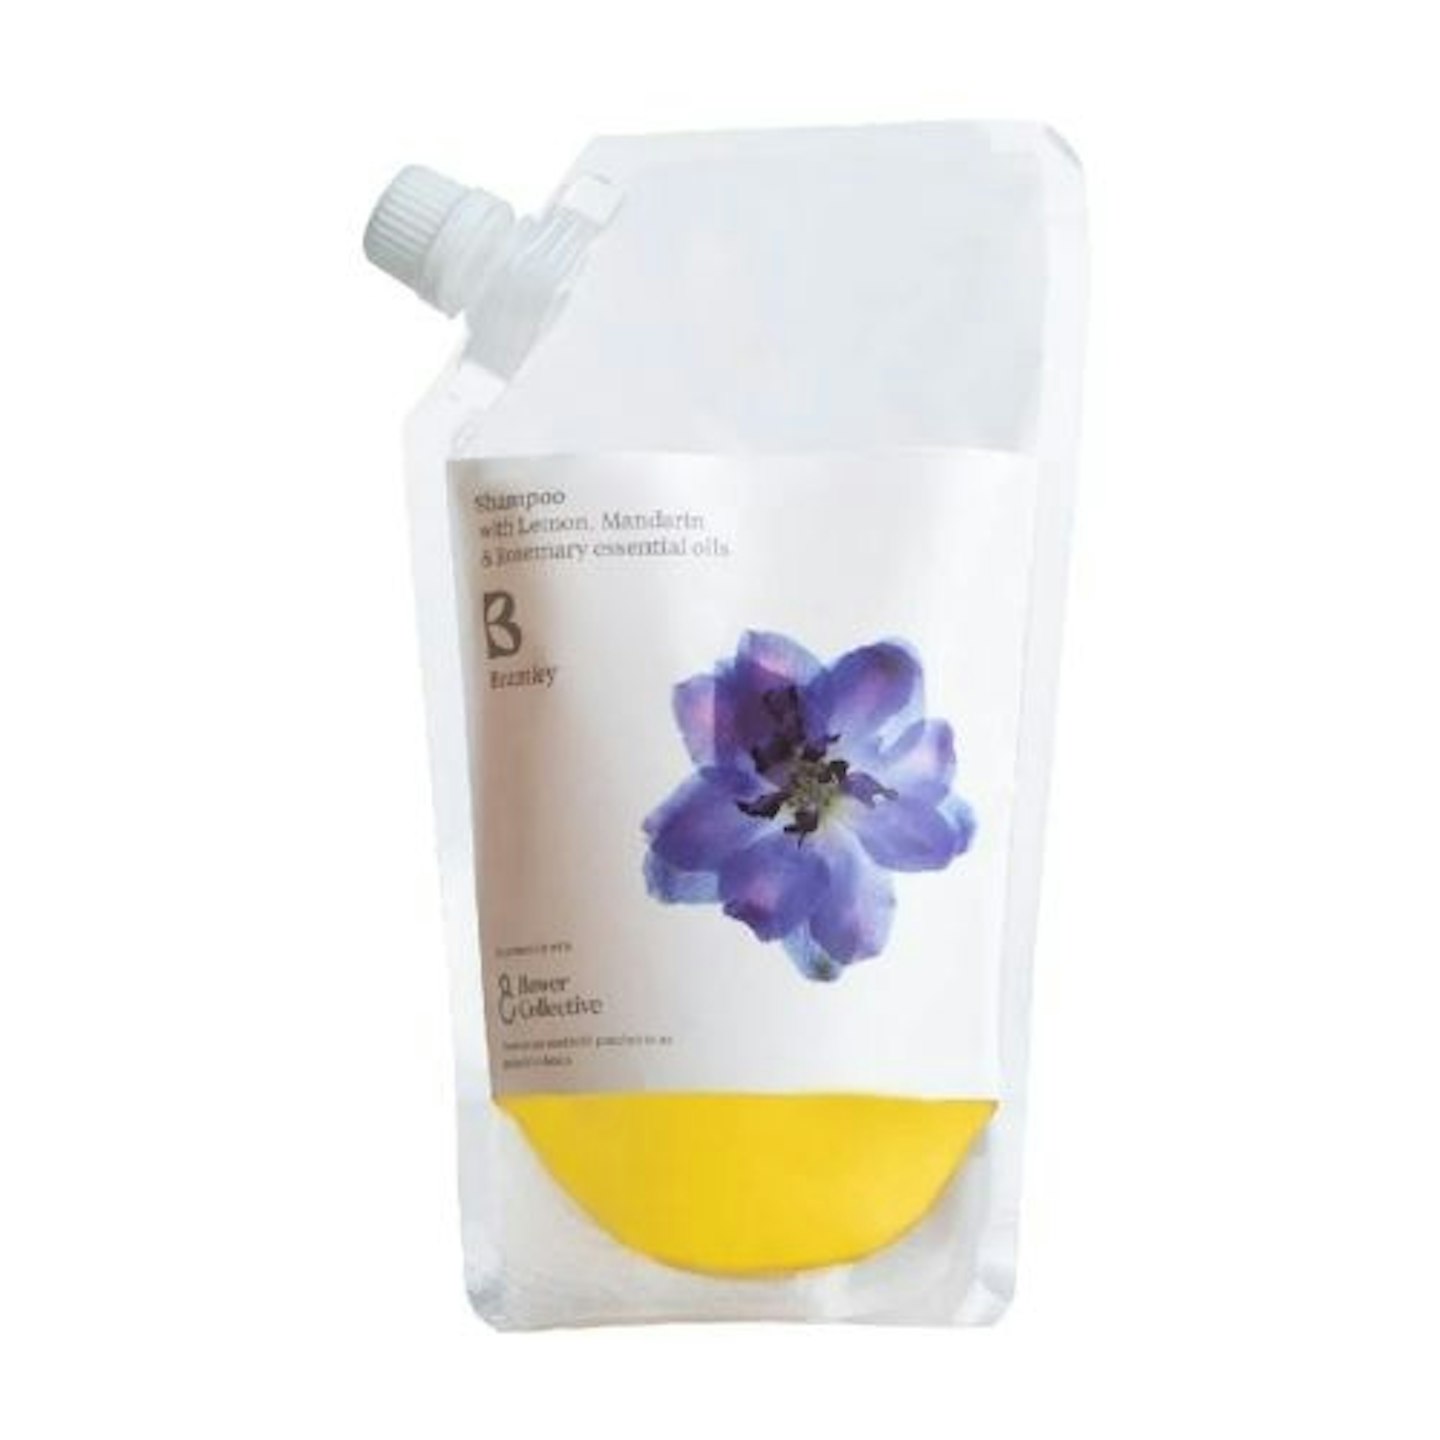 refillable shampoo Bramley Lemon, Mandarin and Rosemary - Shampoo Refill 500ml